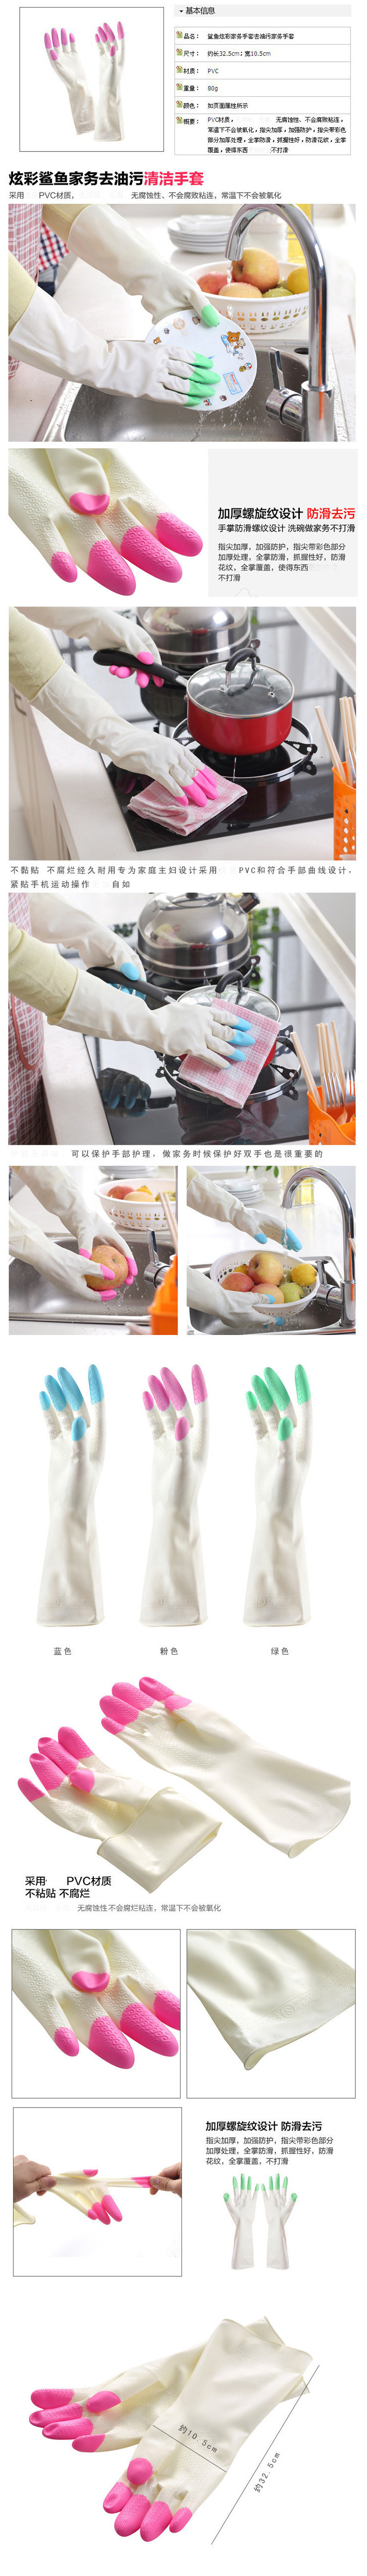 鲨鱼乳胶手套 防滑防水厨房清洁洗碗家务手套S码 颜色随机